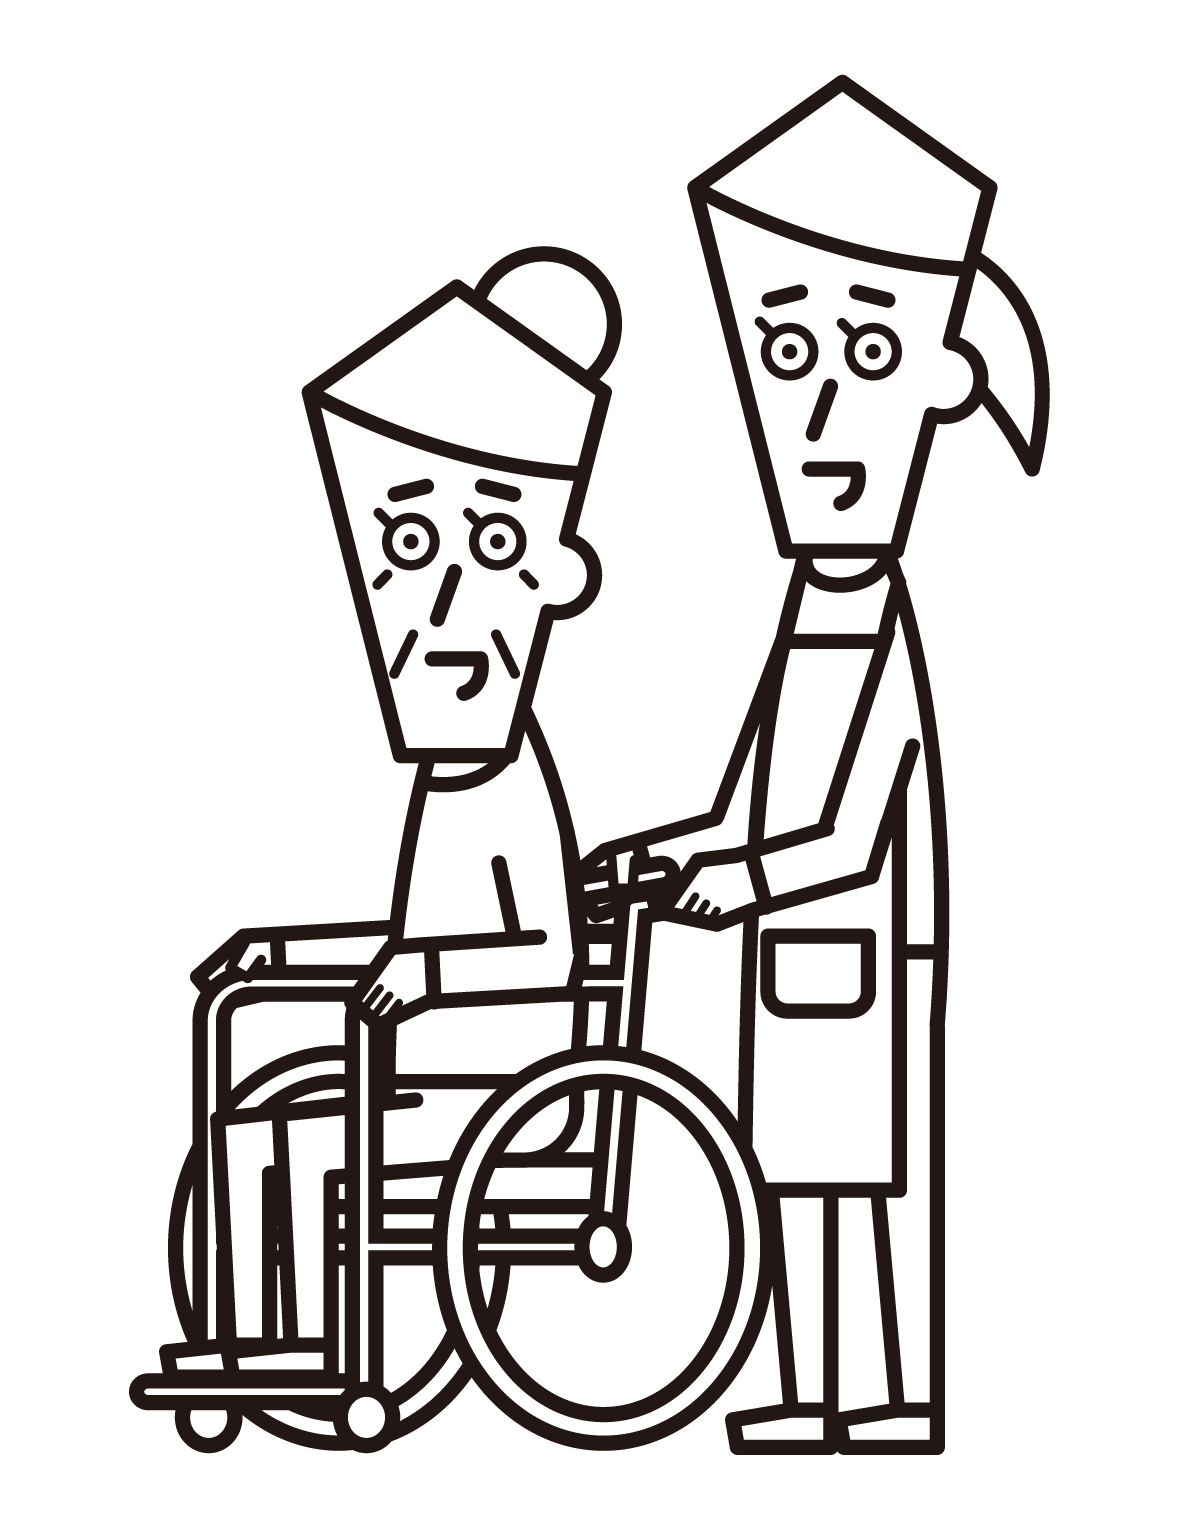 坐在輪椅上的人（祖母）和來訪的護理人員（女性）的插圖